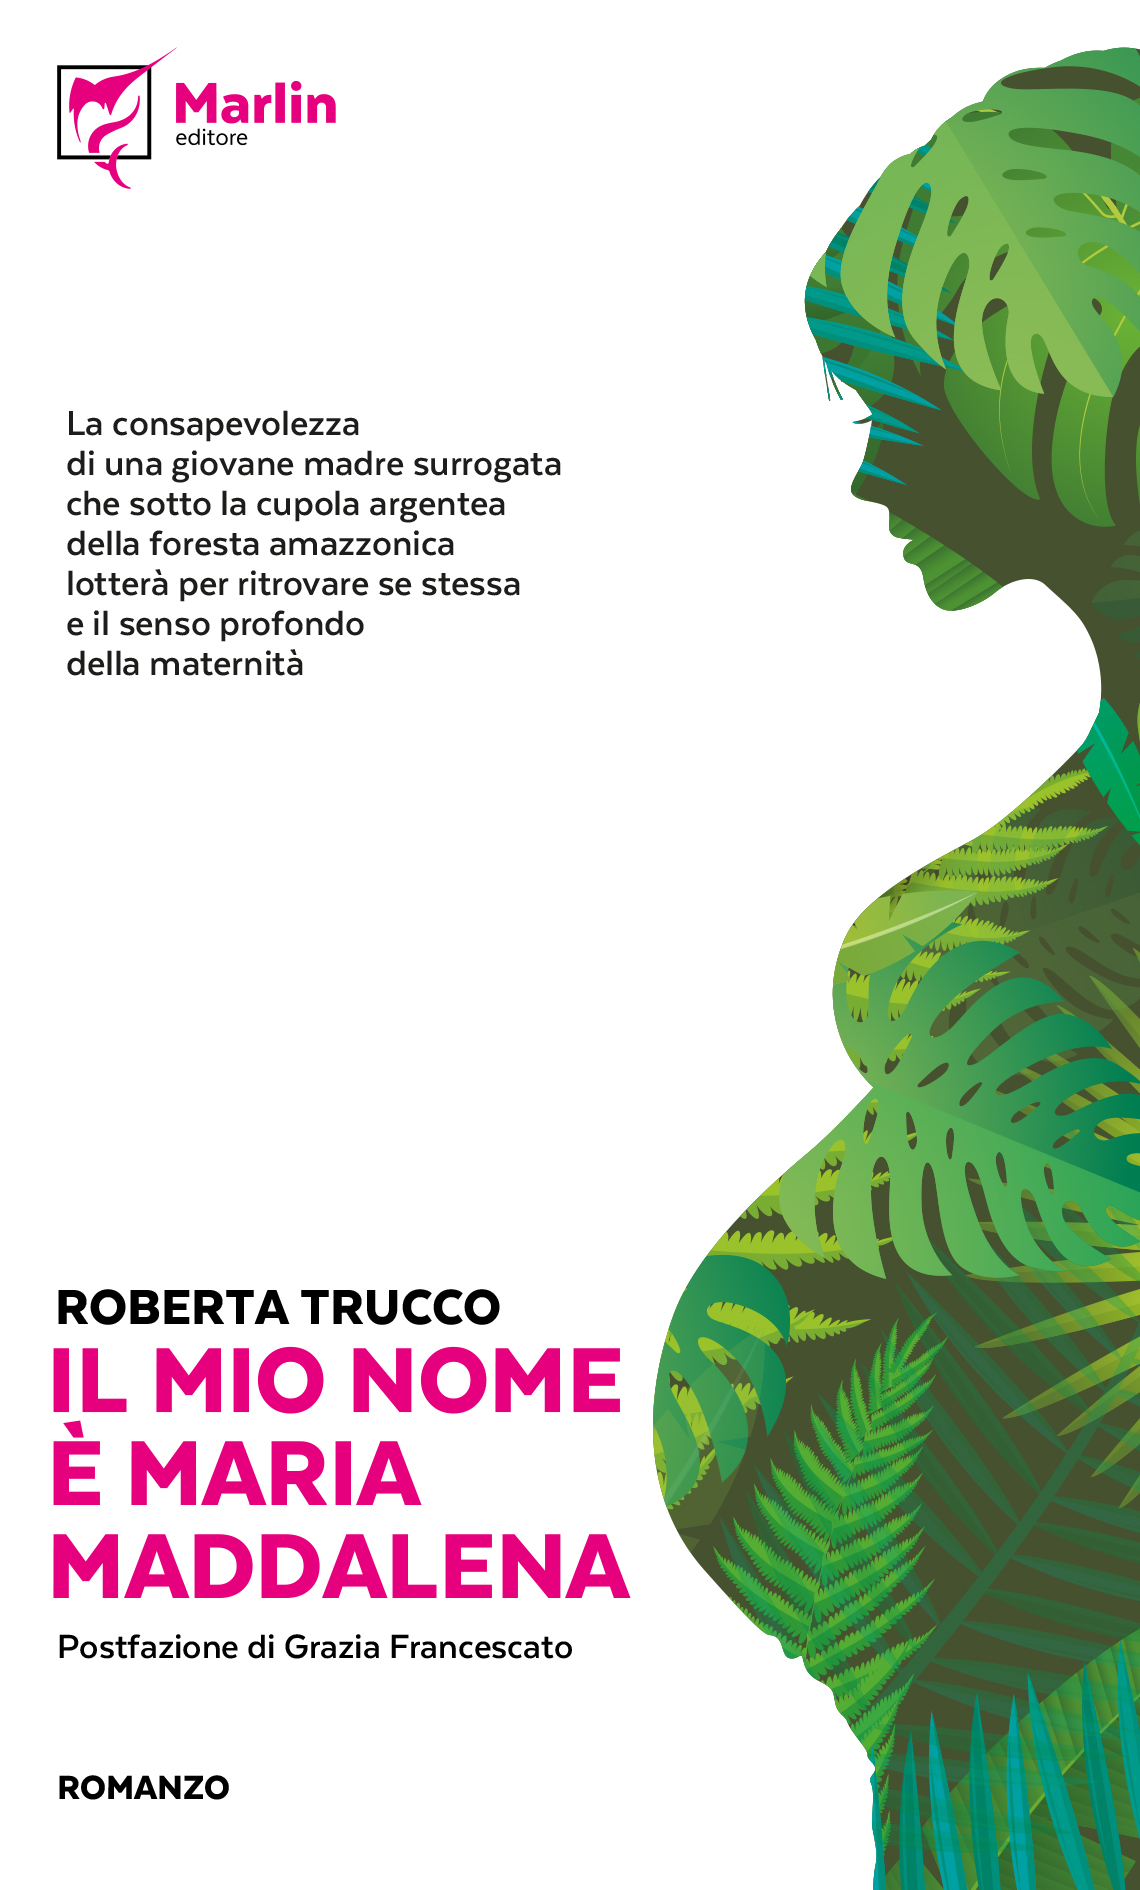 Maternità surrogata, no grazie. Il coraggio delle donne veramente libere nel libro di Roberta Trucco